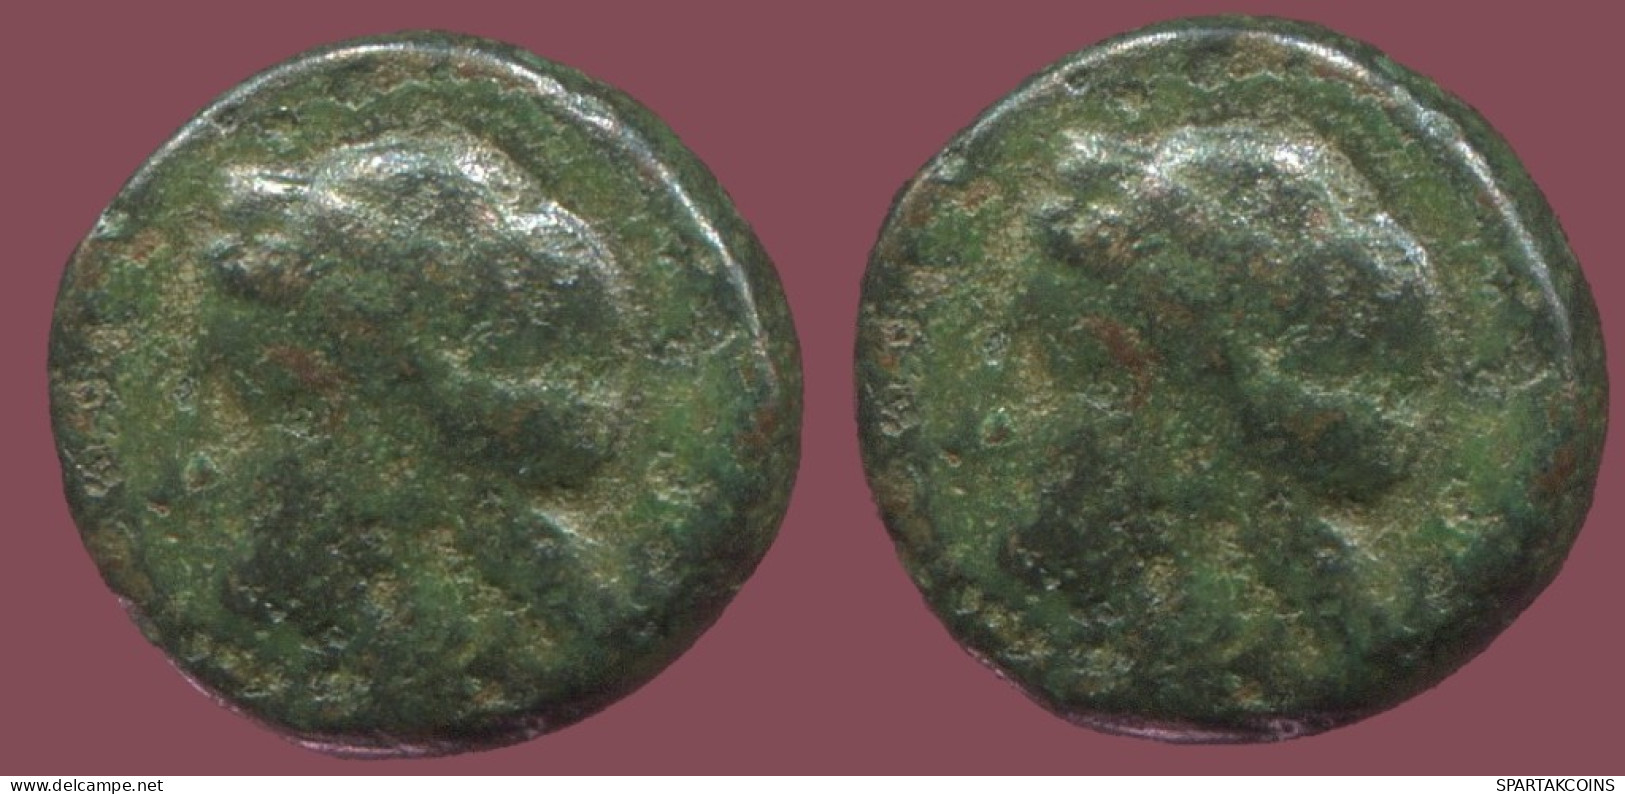 Antiguo Auténtico Original GRIEGO Moneda 1.6g/10mm #ANT1488.9.E.A - Grecques